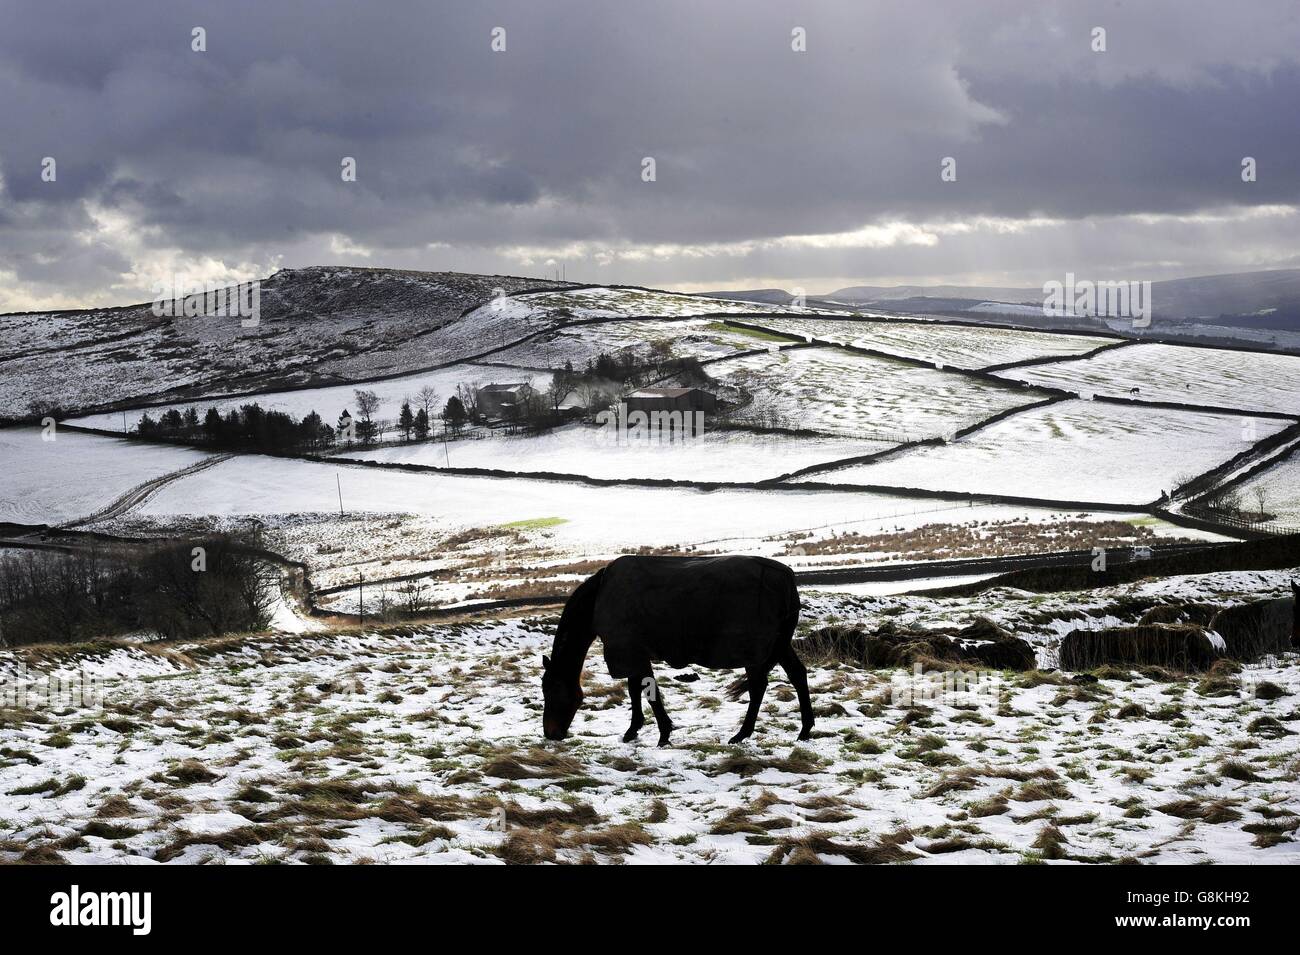 Schneefälle brachten winterliche Bedingungen zurück in Teile von Großbritannien, als Nachtschnee den Snake Pass im Peak District, Derbyshire, schloss, machte es für Pferde schwierig, auf den Hügeln zwischen Glossop und Buxton Gras zu finden. Stockfoto